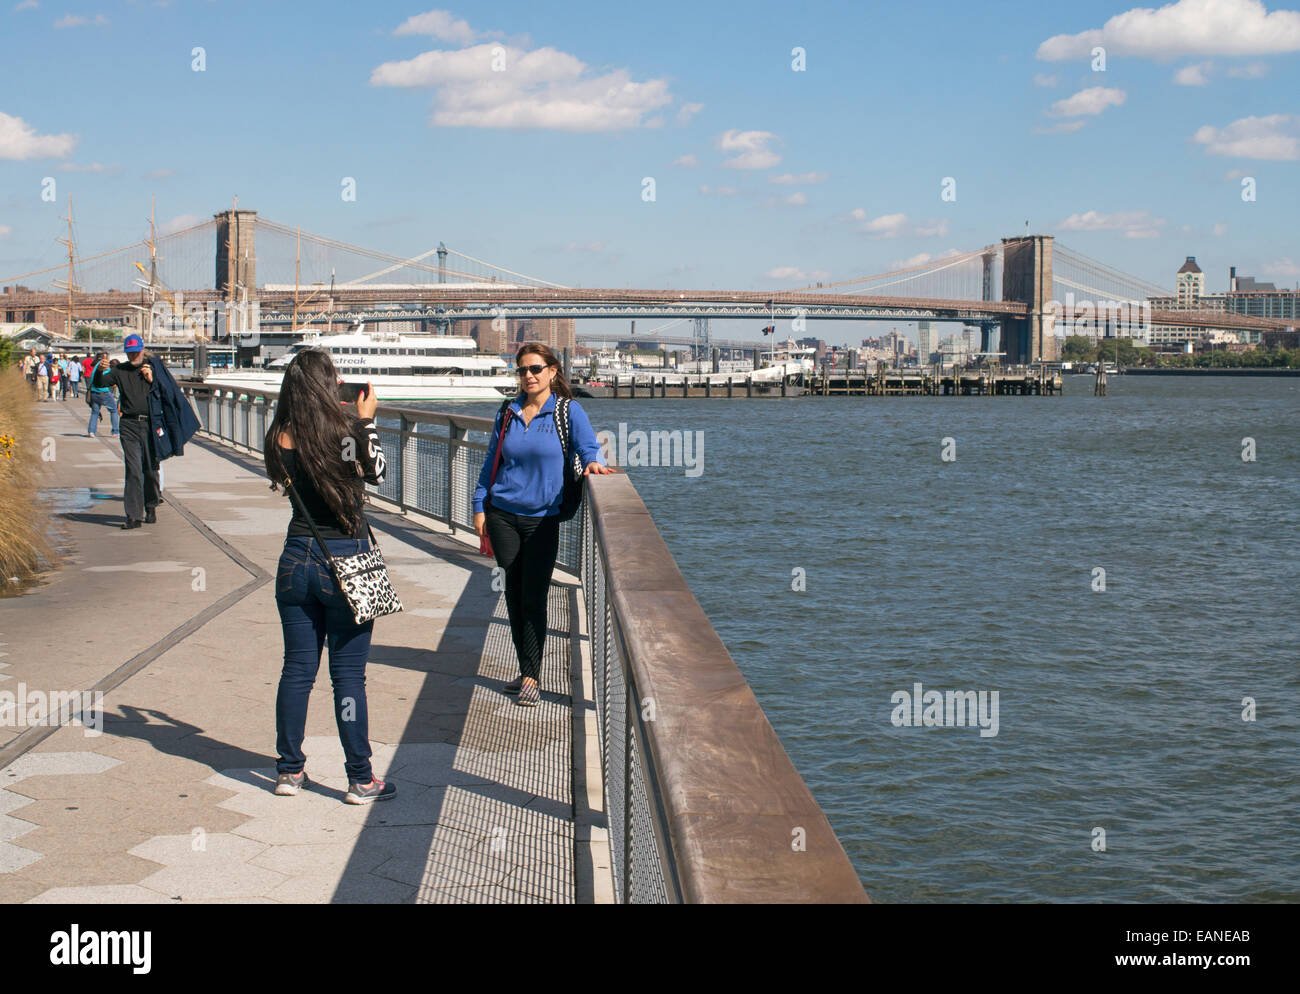 Giovane donna fotografare amico con il ponte di Brooklyn in background Manhattan, New York, Stati Uniti d'America Foto Stock